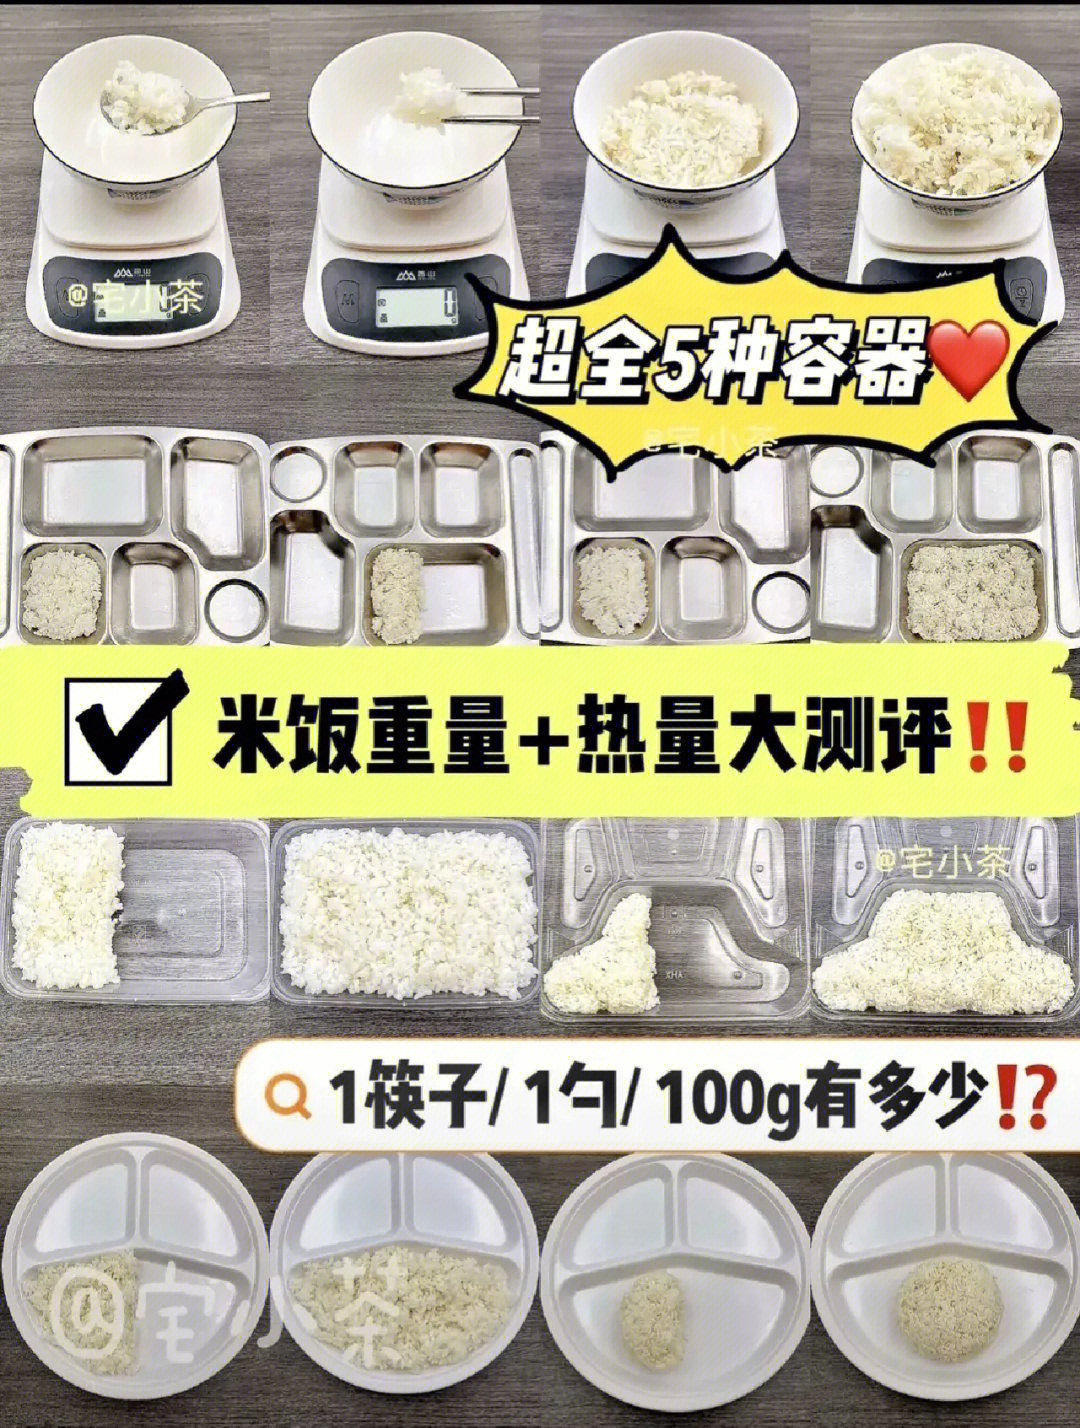 5种容器米饭重量 热量731筷子/1勺/100g有多少?